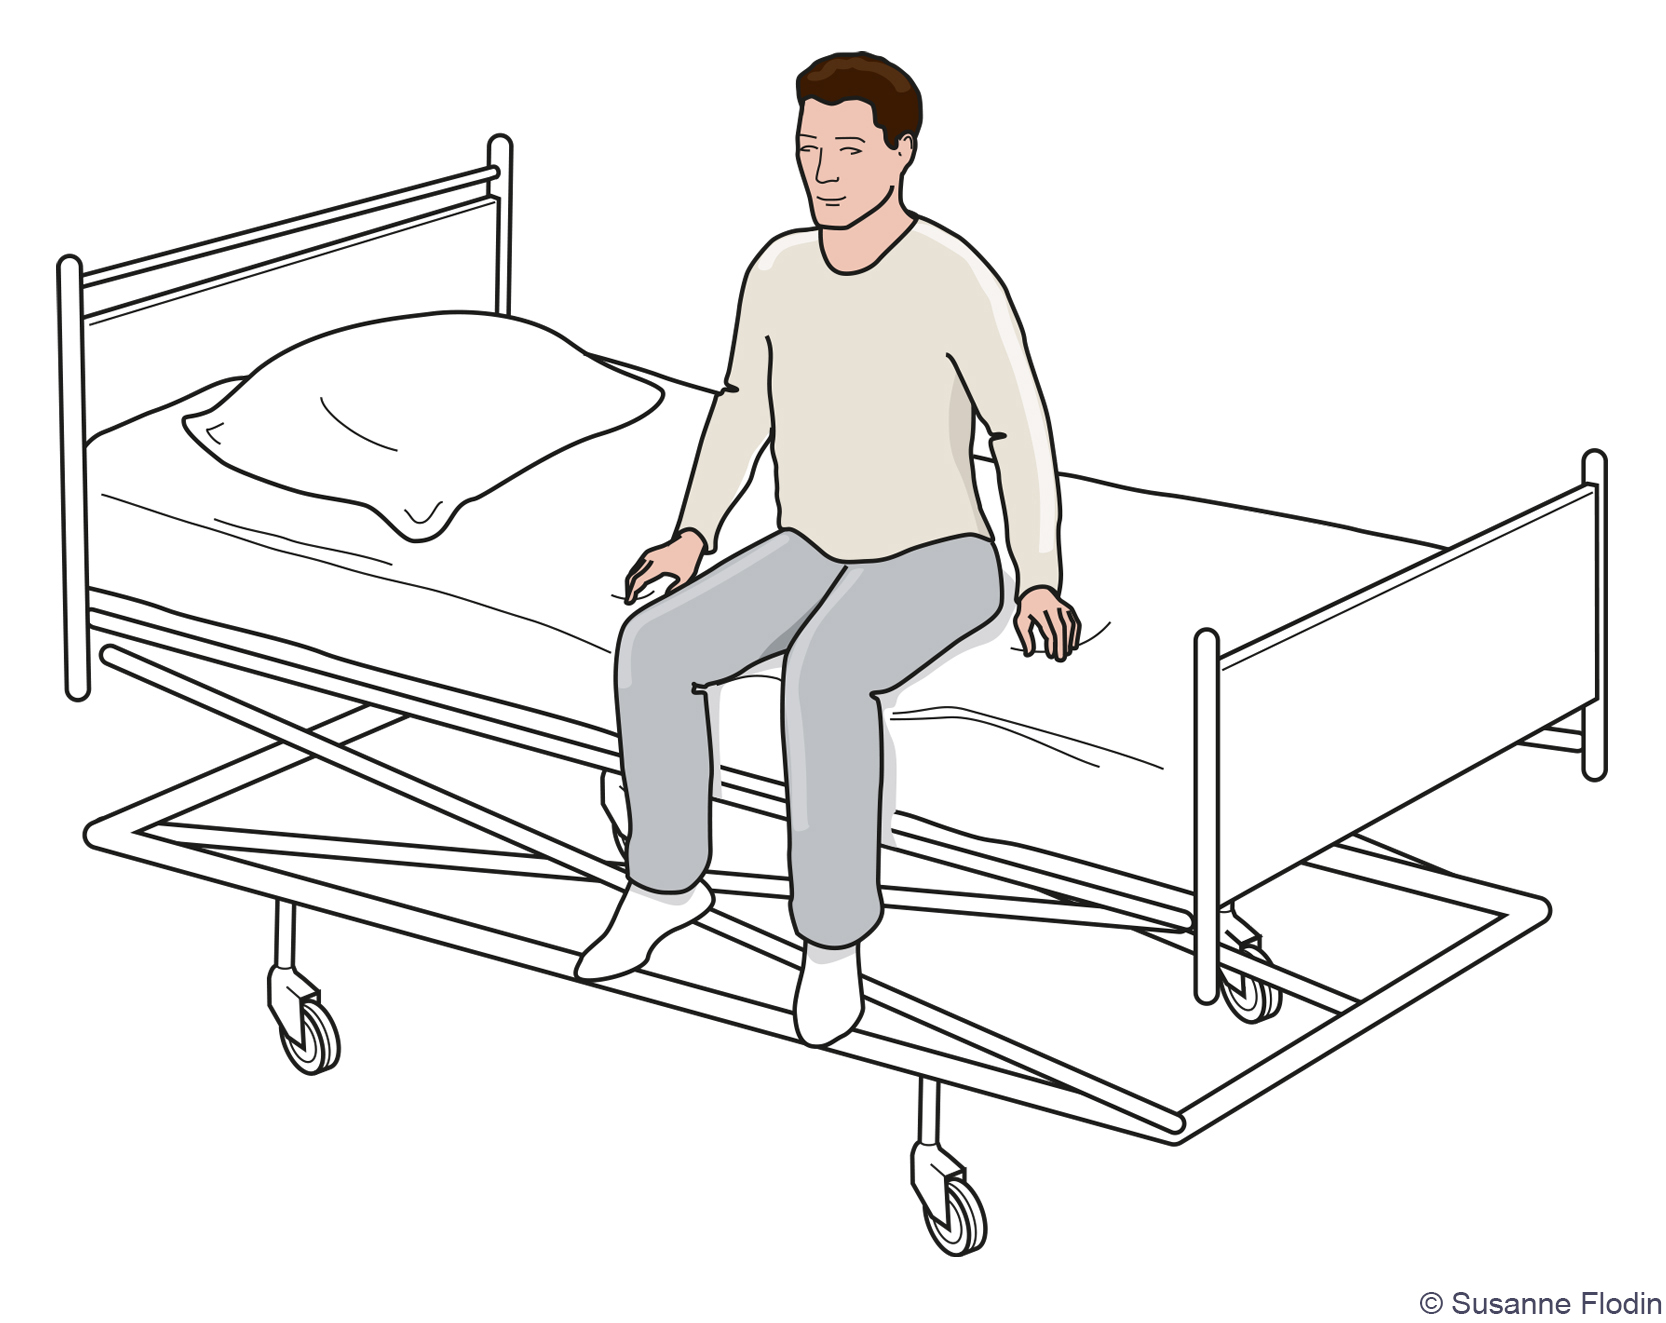 Bild som beskriver patienten som sitter på sängkanten med benen och fötterna ner mot golvet. 